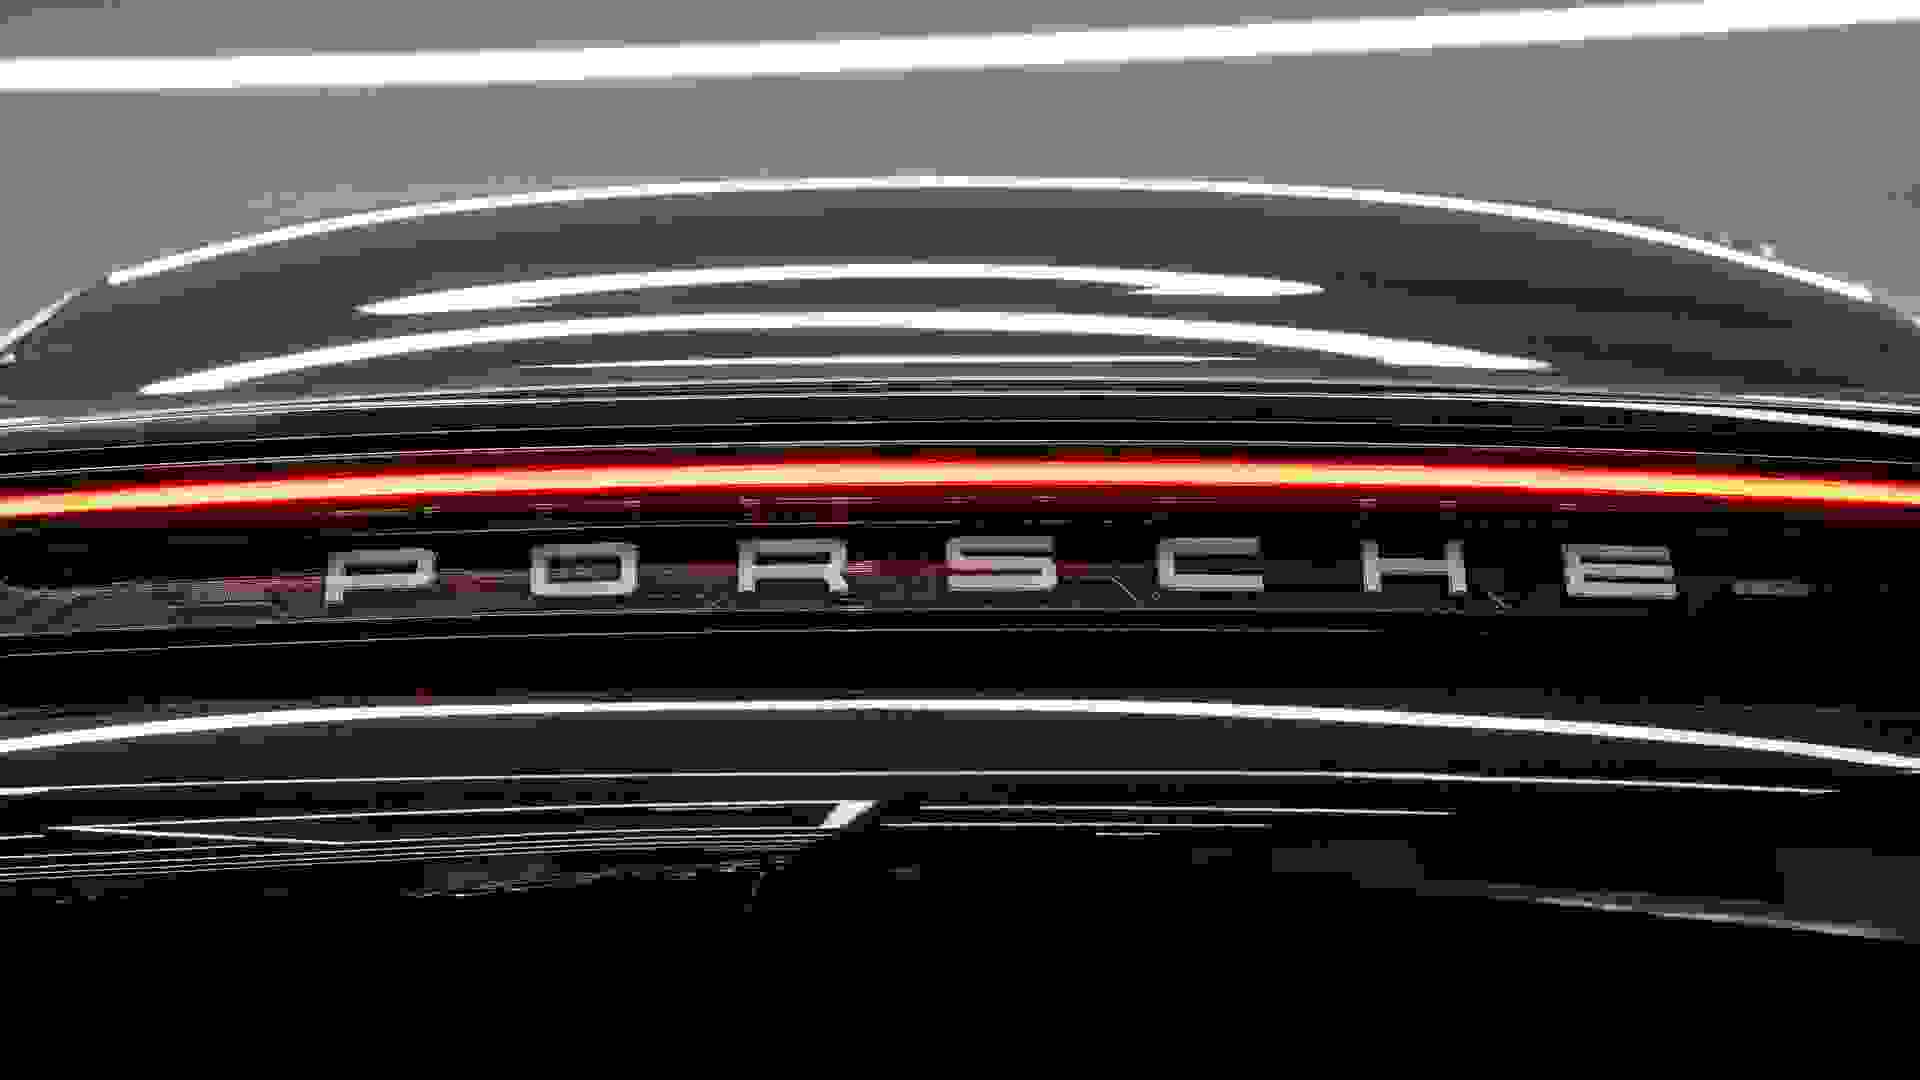 Porsche Taycan Photo b214d51e-457f-44e0-a988-4c4f4af6fc0a.jpg